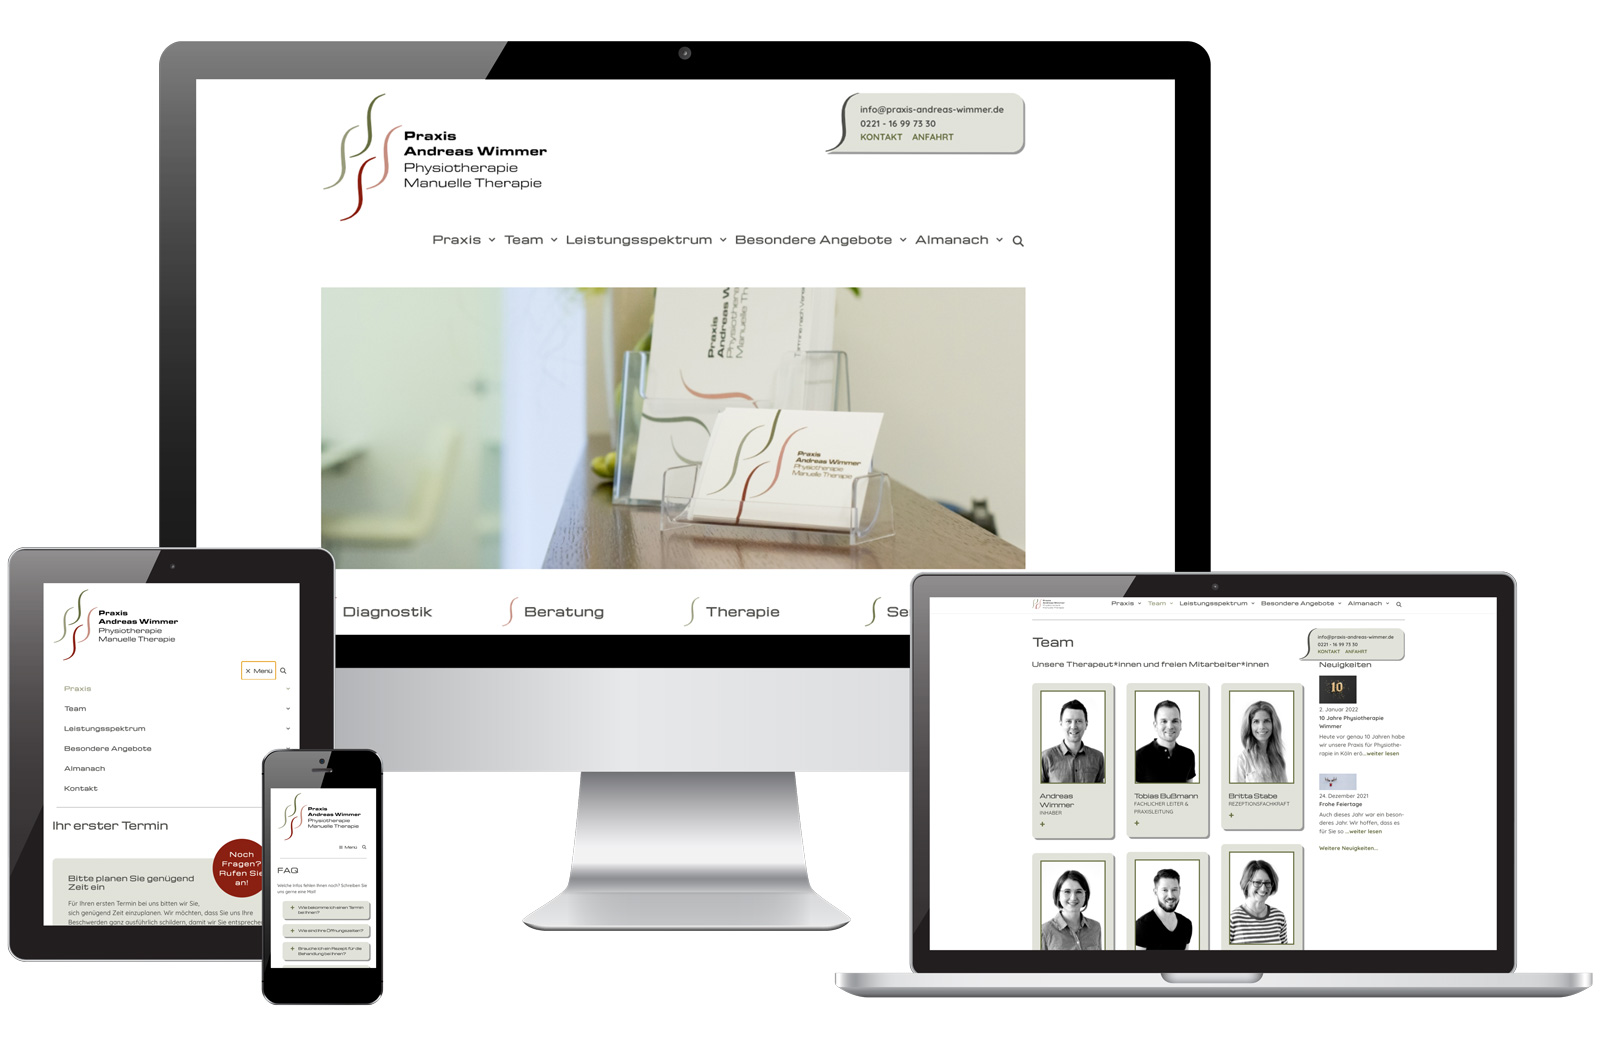 Webdesign für Website der Physiotherapie-Praxis Andreas Wimmer: https://praxis-andreas-wimmer.de/